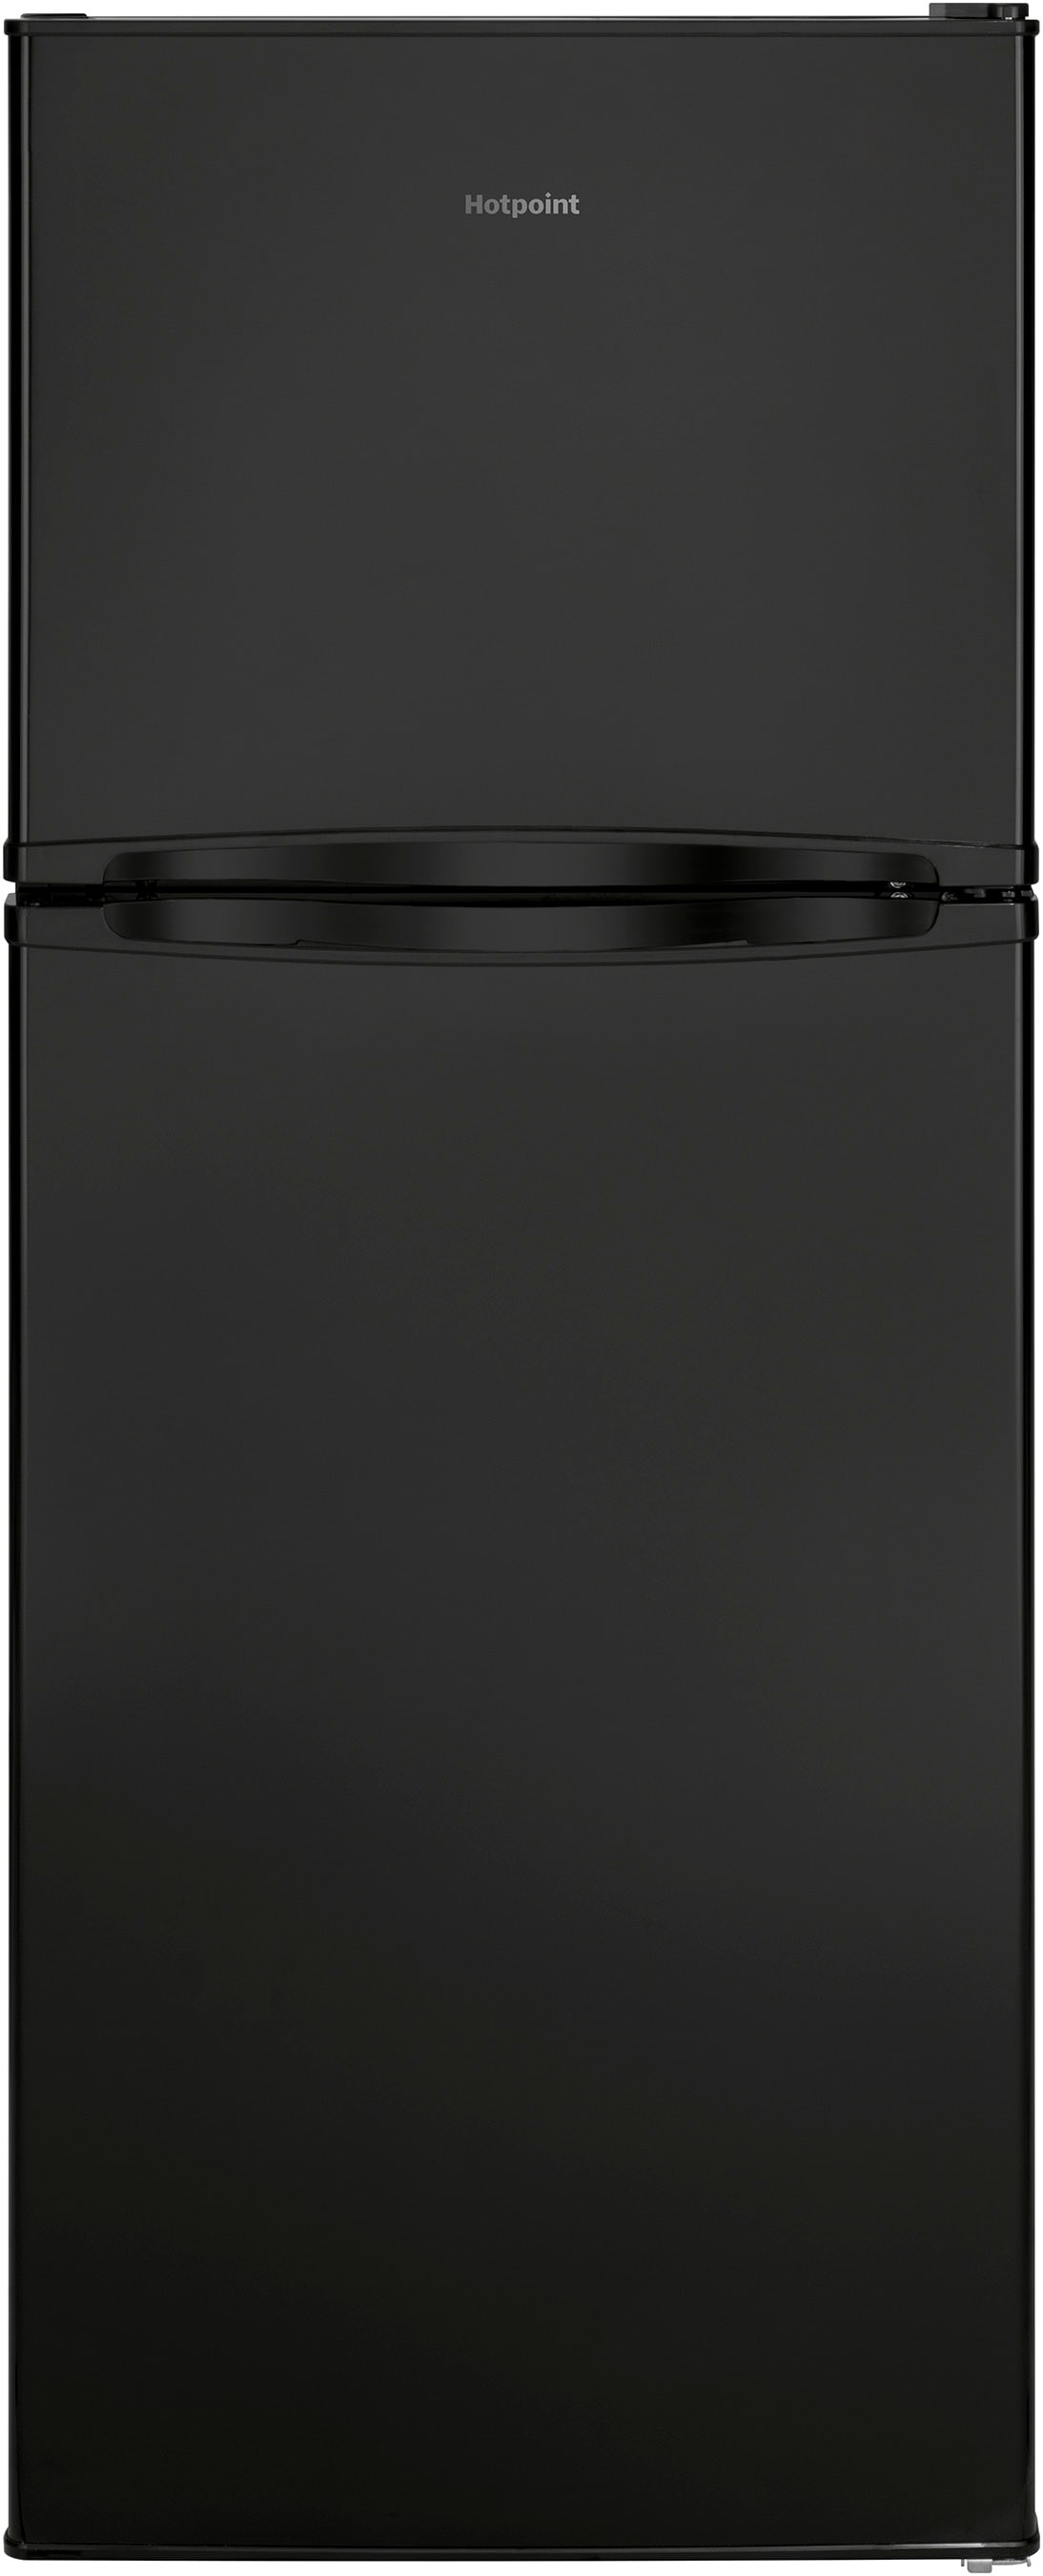 18.3 Cu. Ft. Top Freezer Refrigerator White-FFTR1814WW